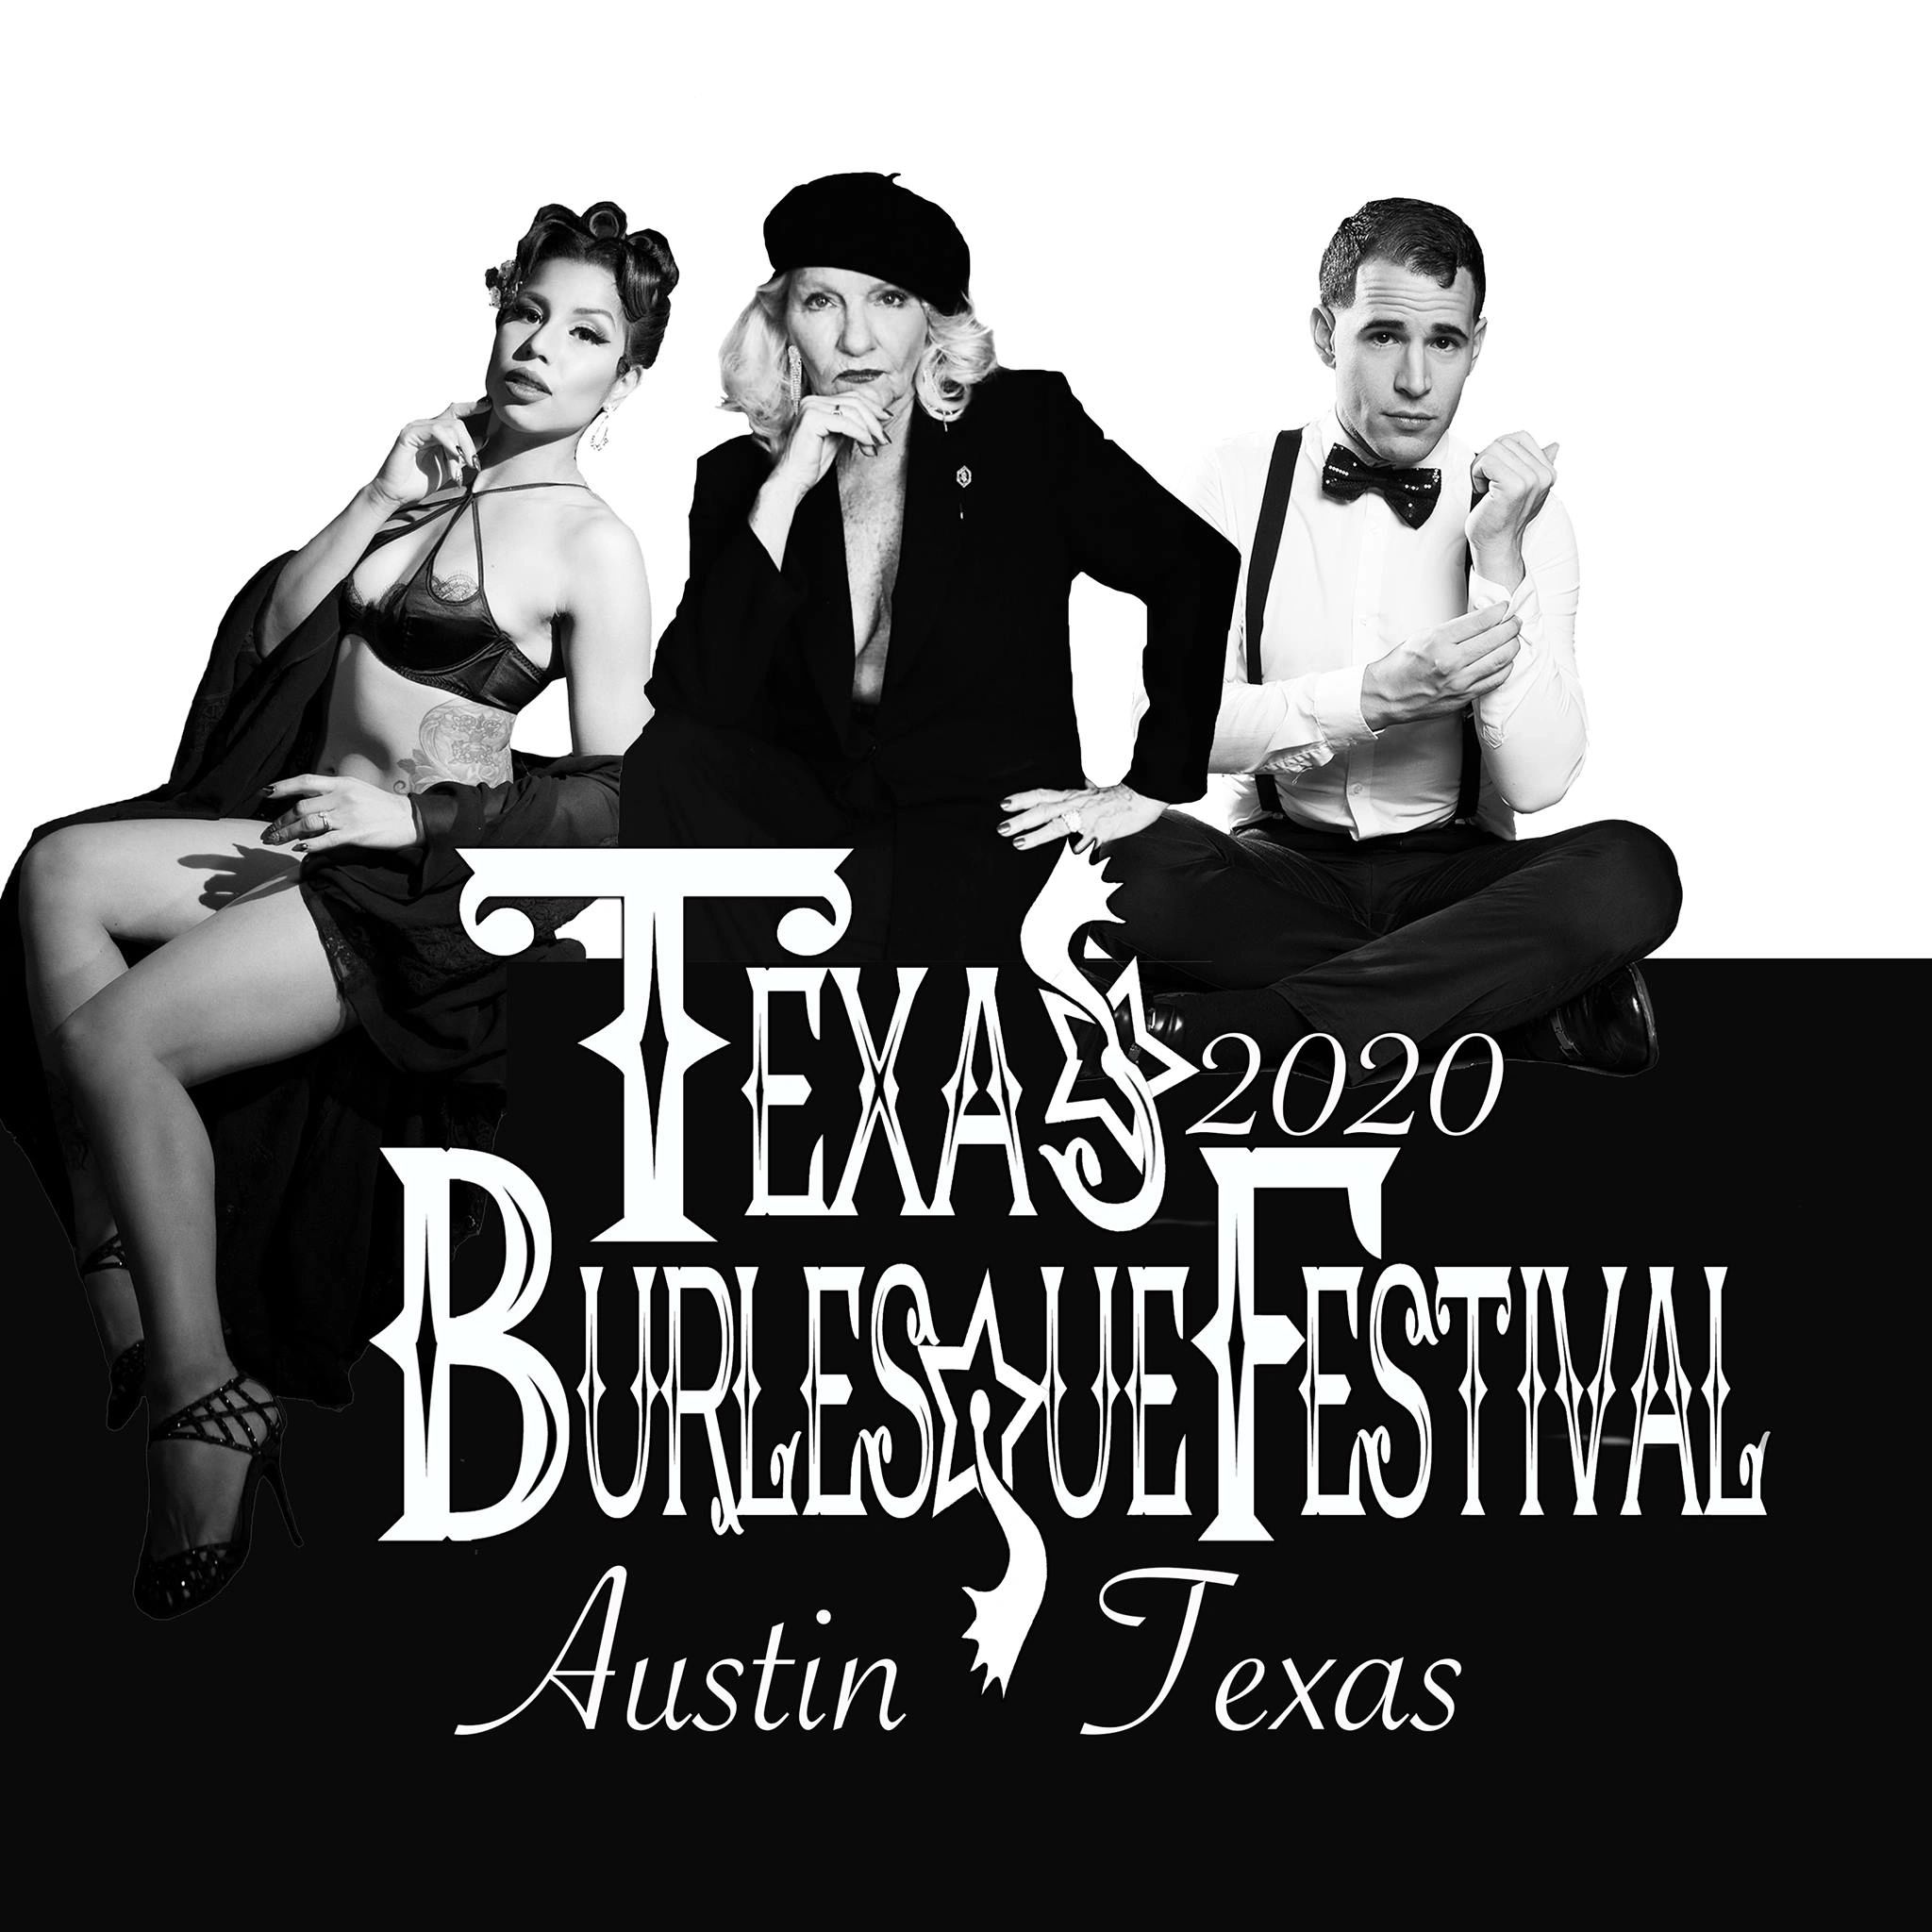 Events Texas Burlesque Festival and More Forbidden Fruit